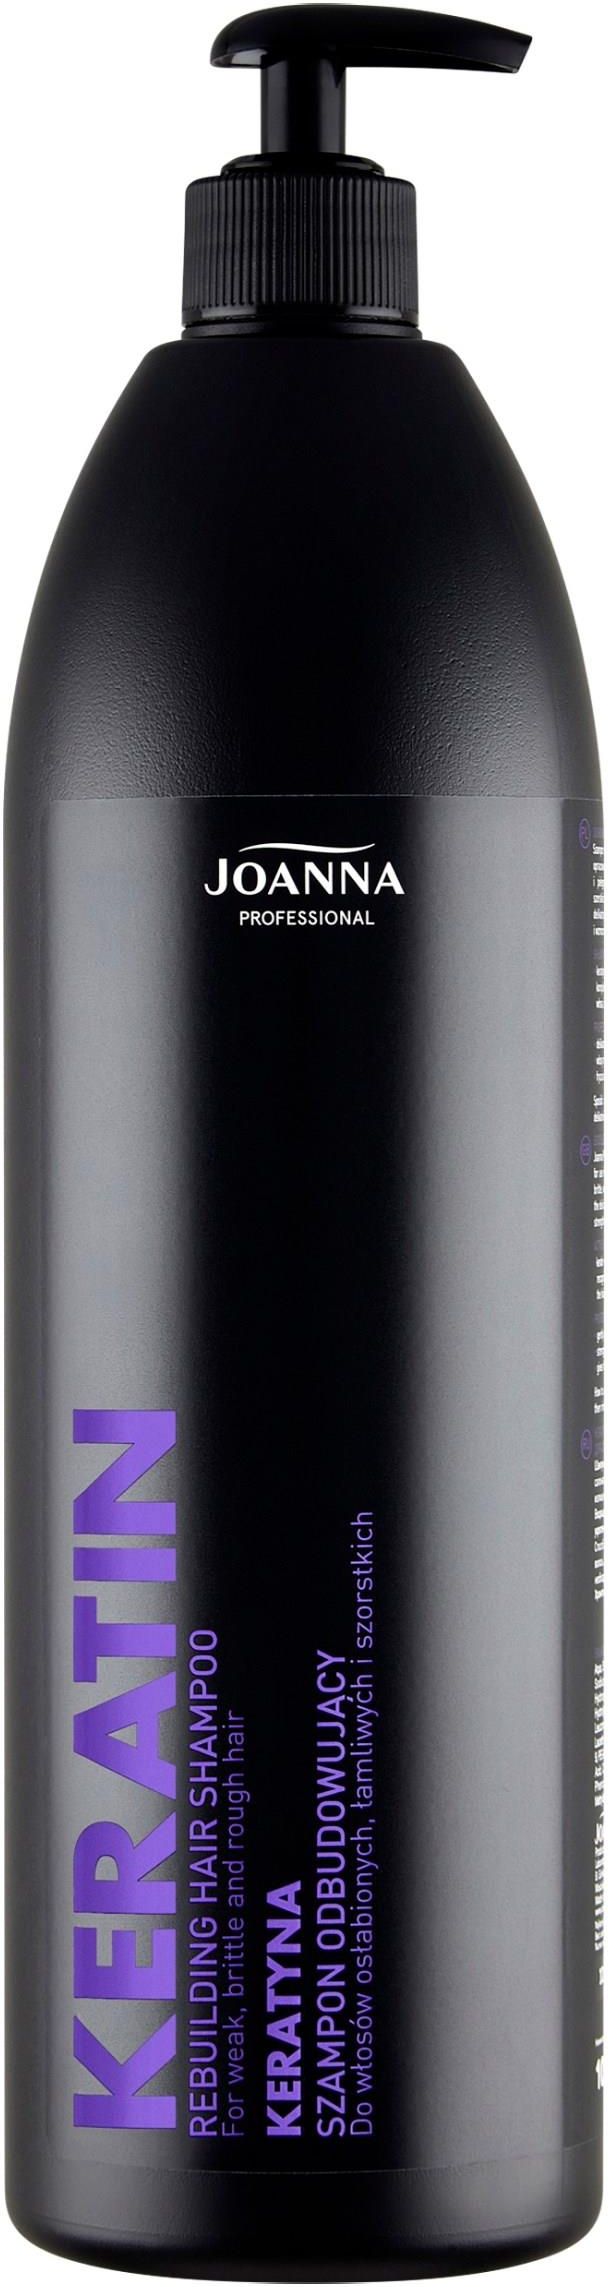 joanna professional szampon odbudowujący z kreatyną